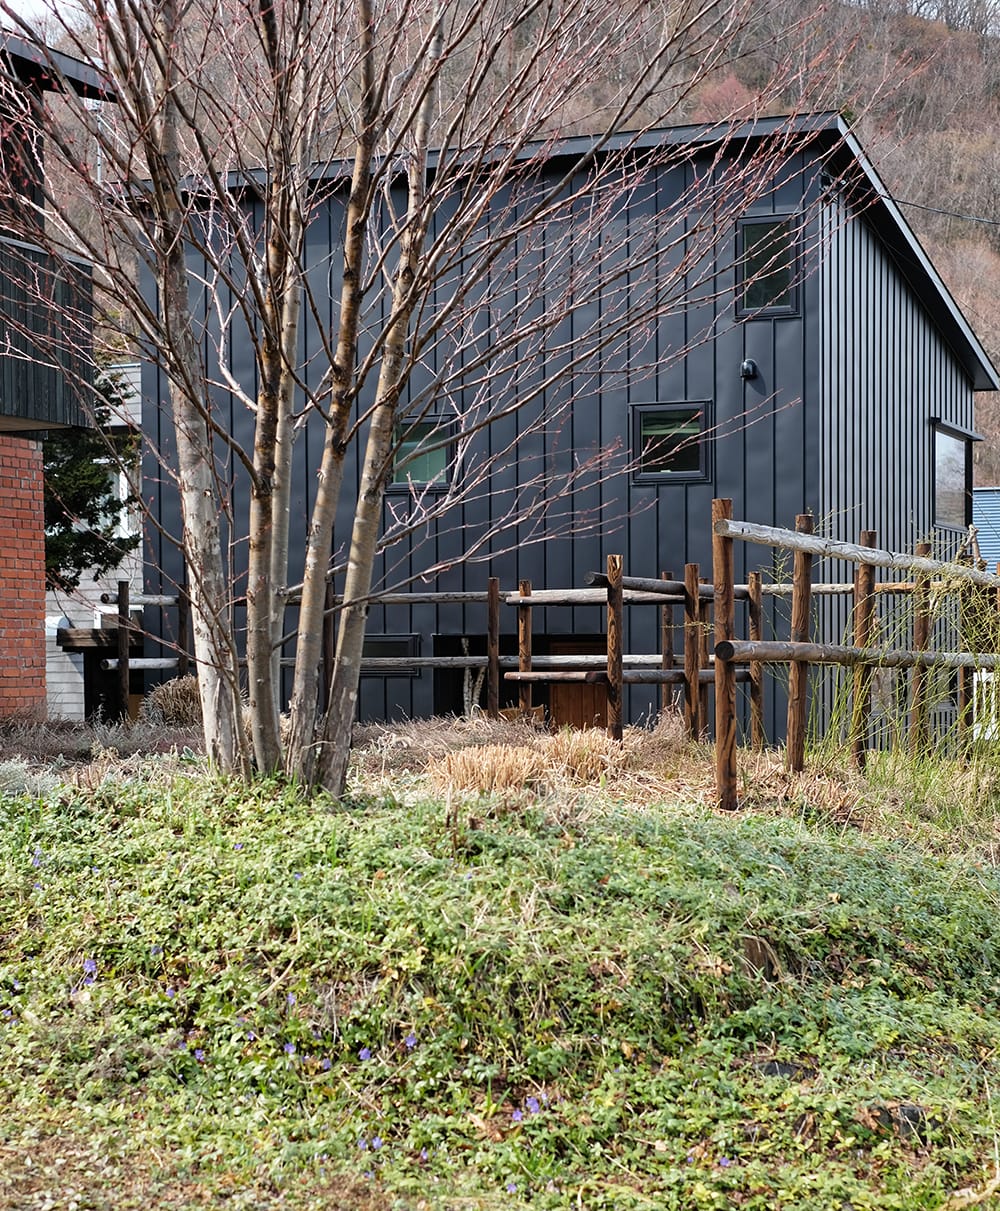 カツラと焼き丸太の木柵のある庭